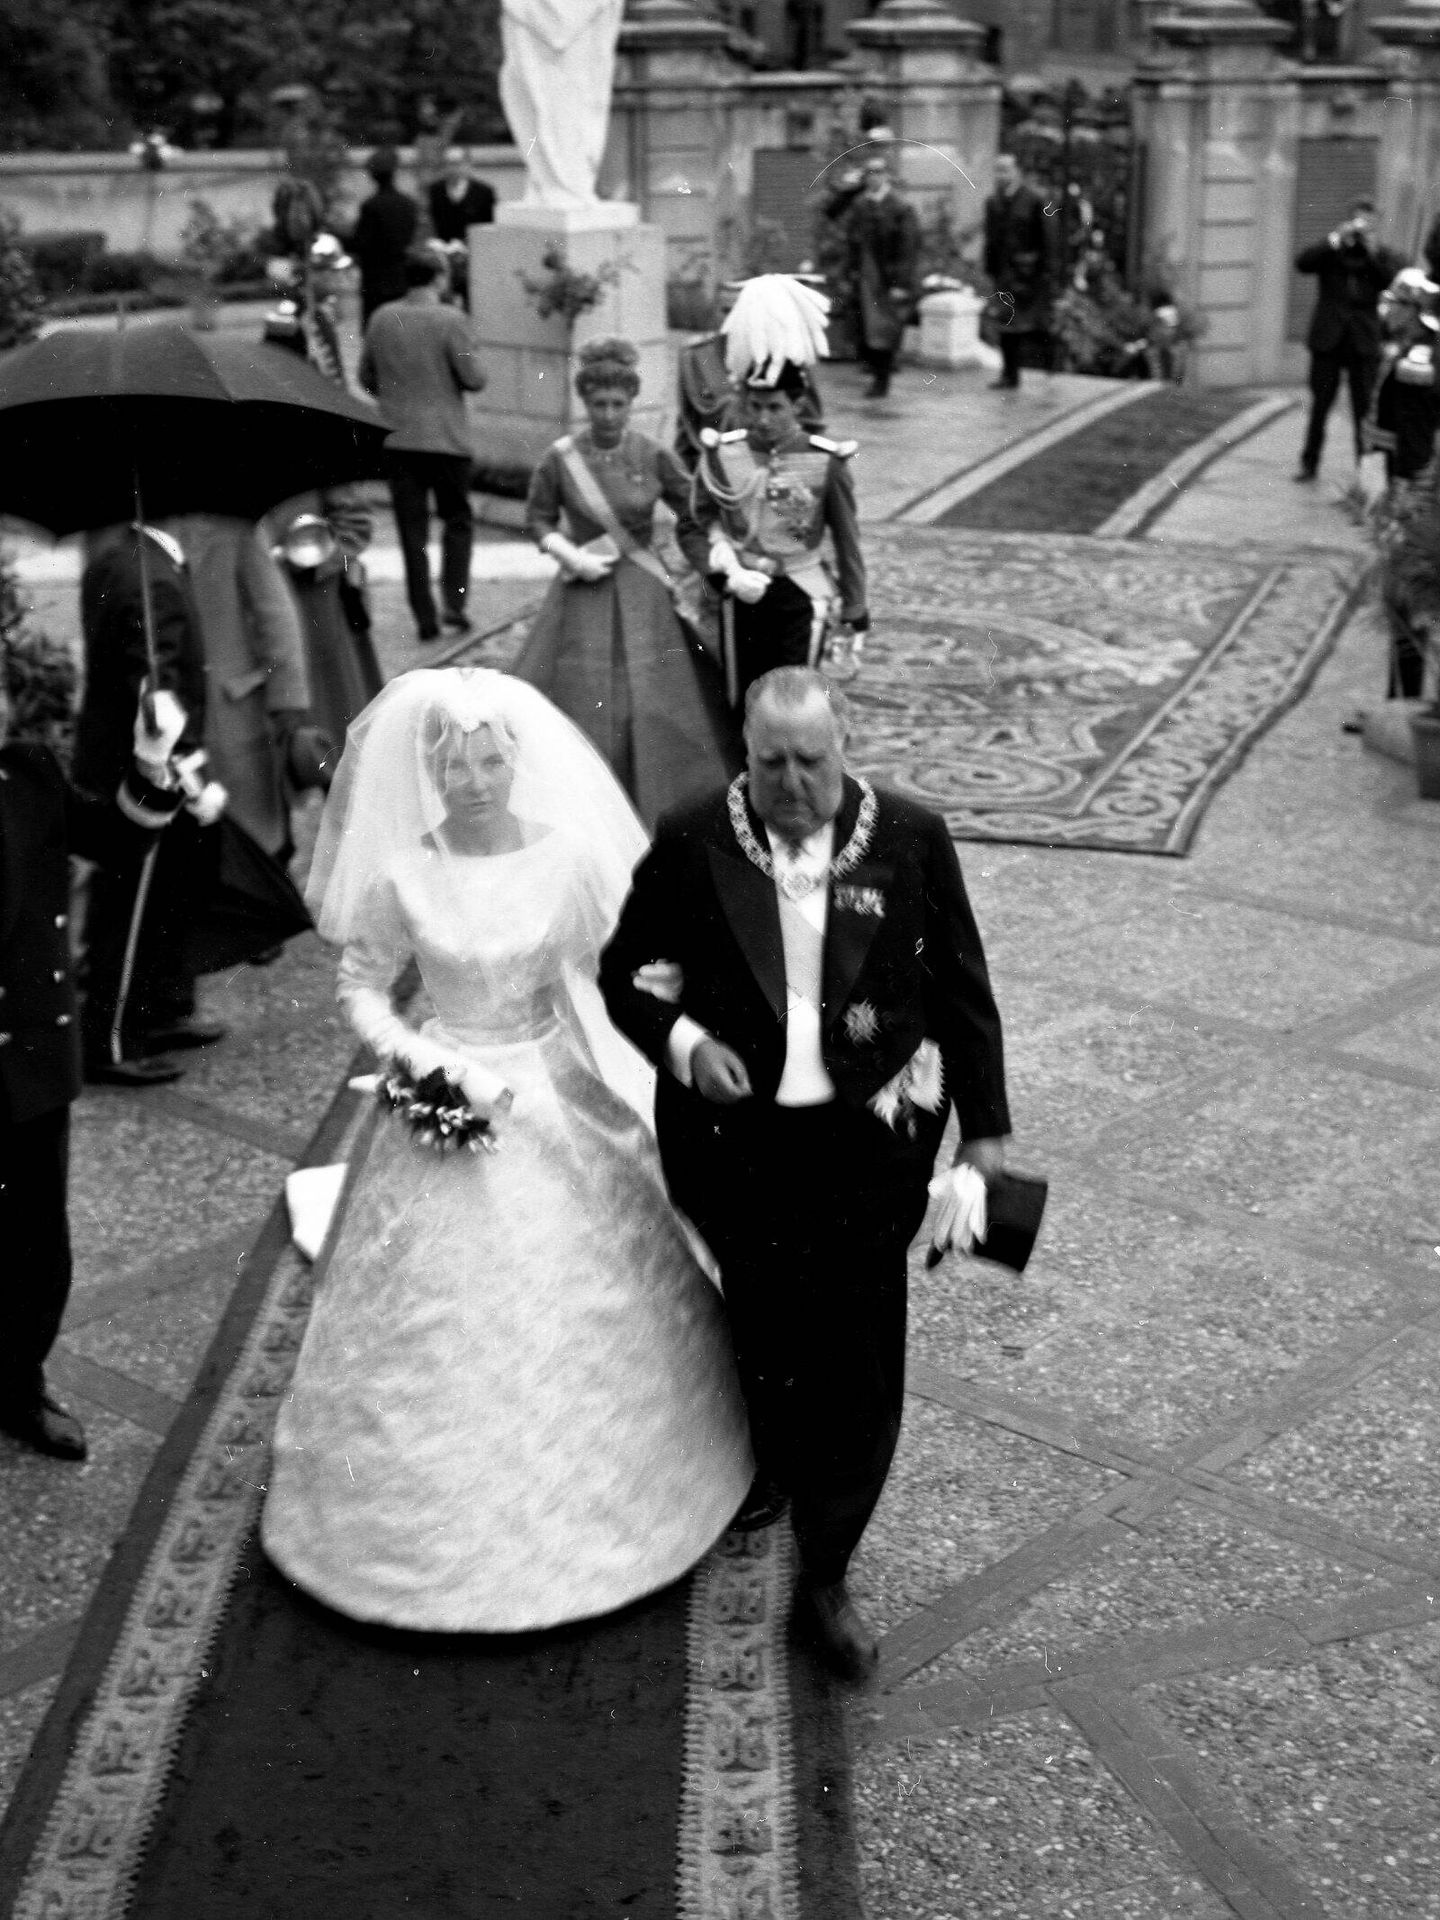 La boda entre Teresa de Borbón-Dos Sicilias y Borbón-Parma con Íñigo Moreno y de Arteaga en abril de 1961. (Europa Press)